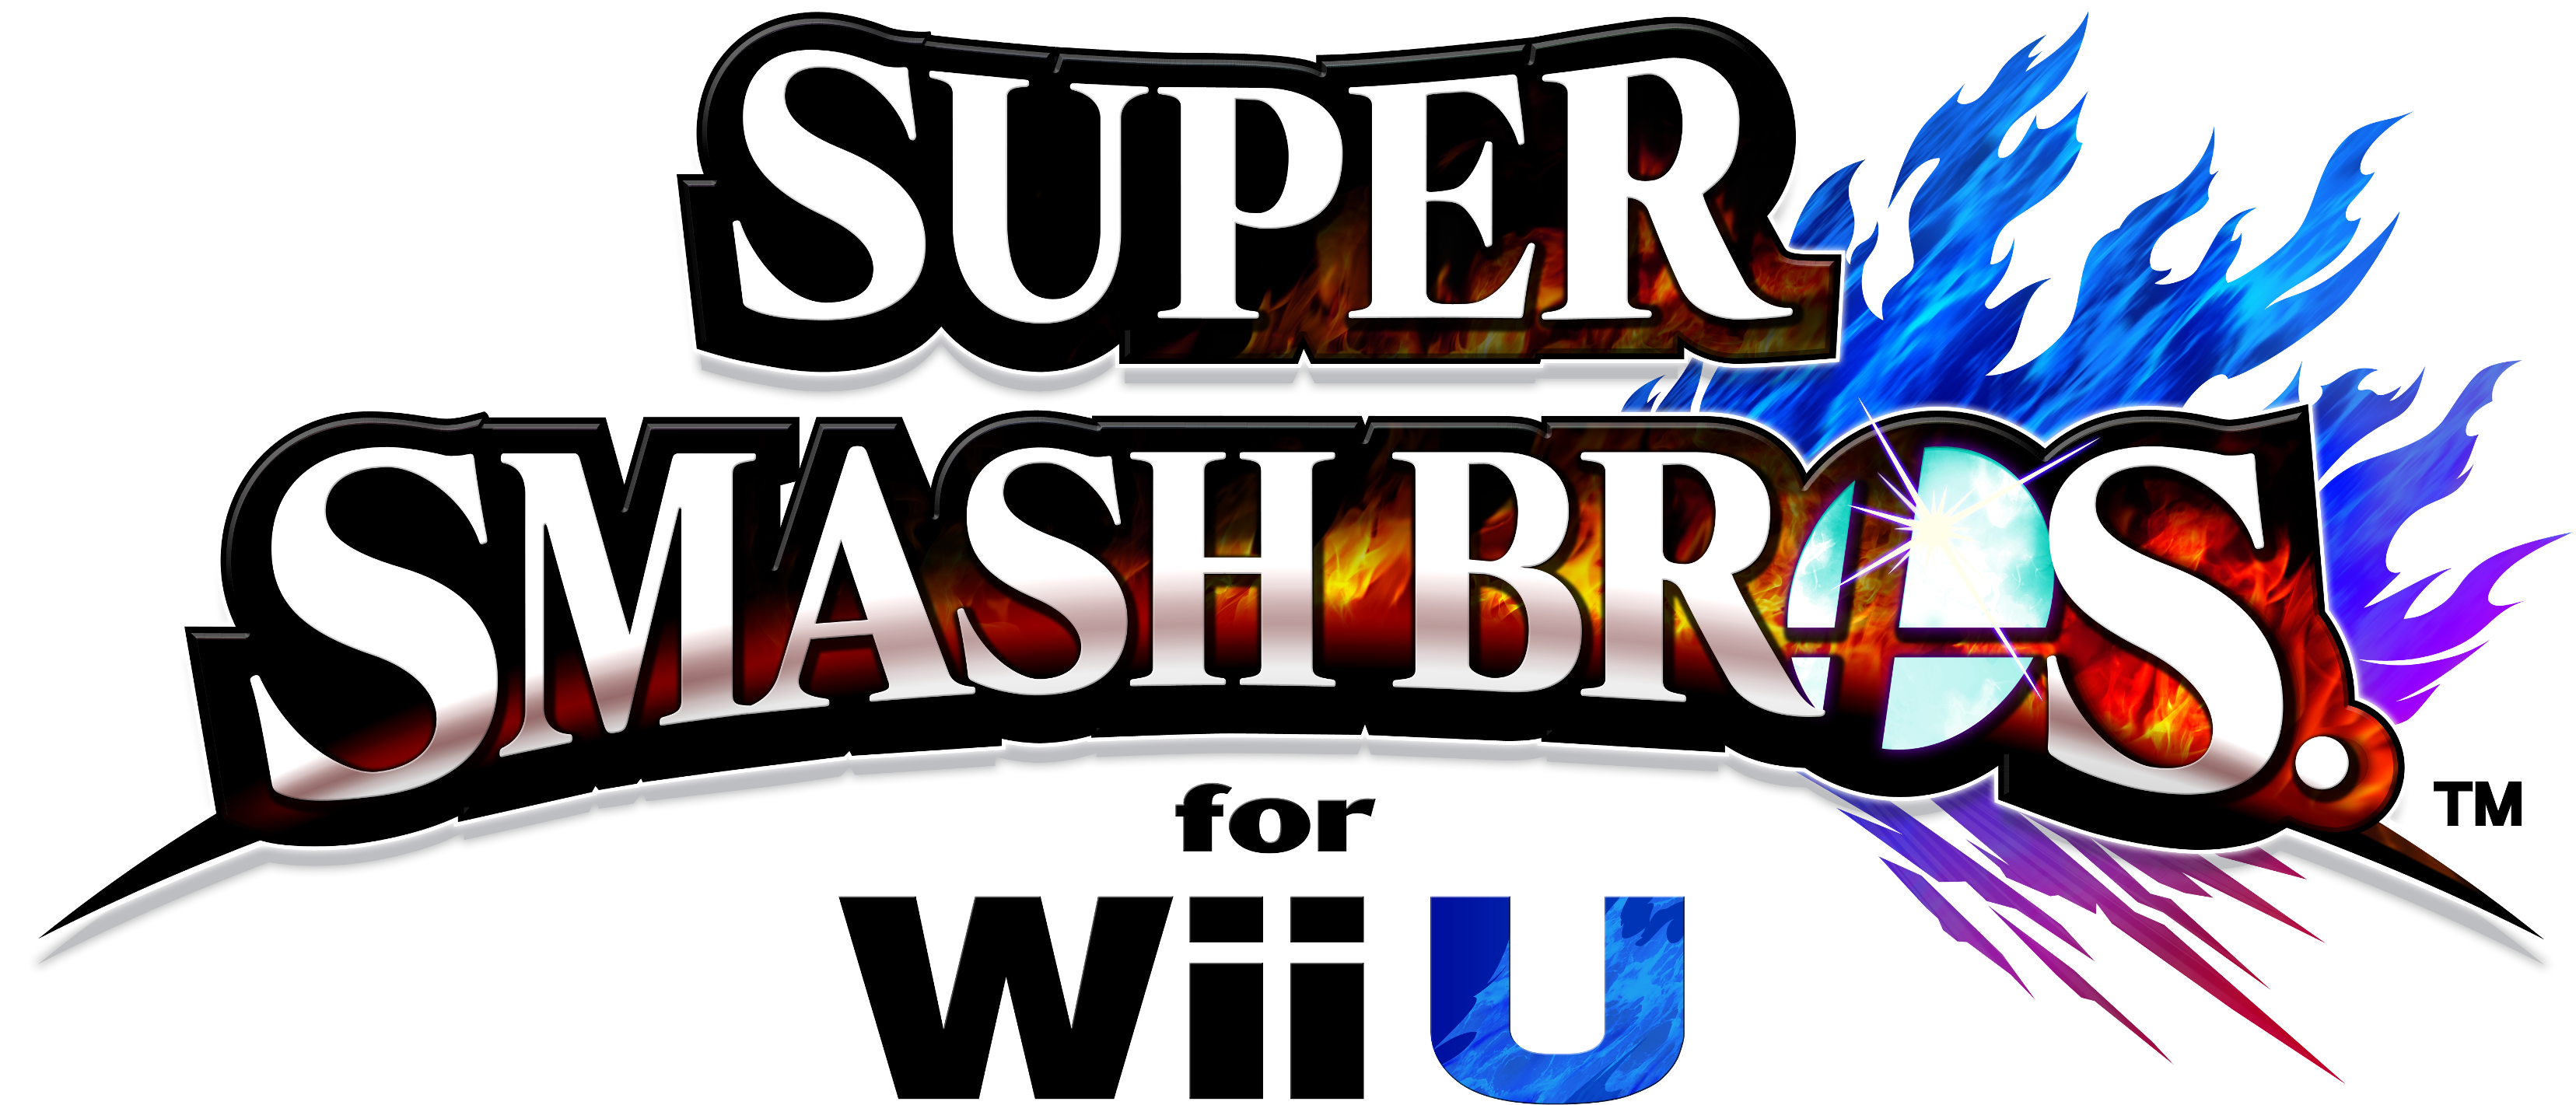 Super Smash Bros. Logo PNG صورة مجانية